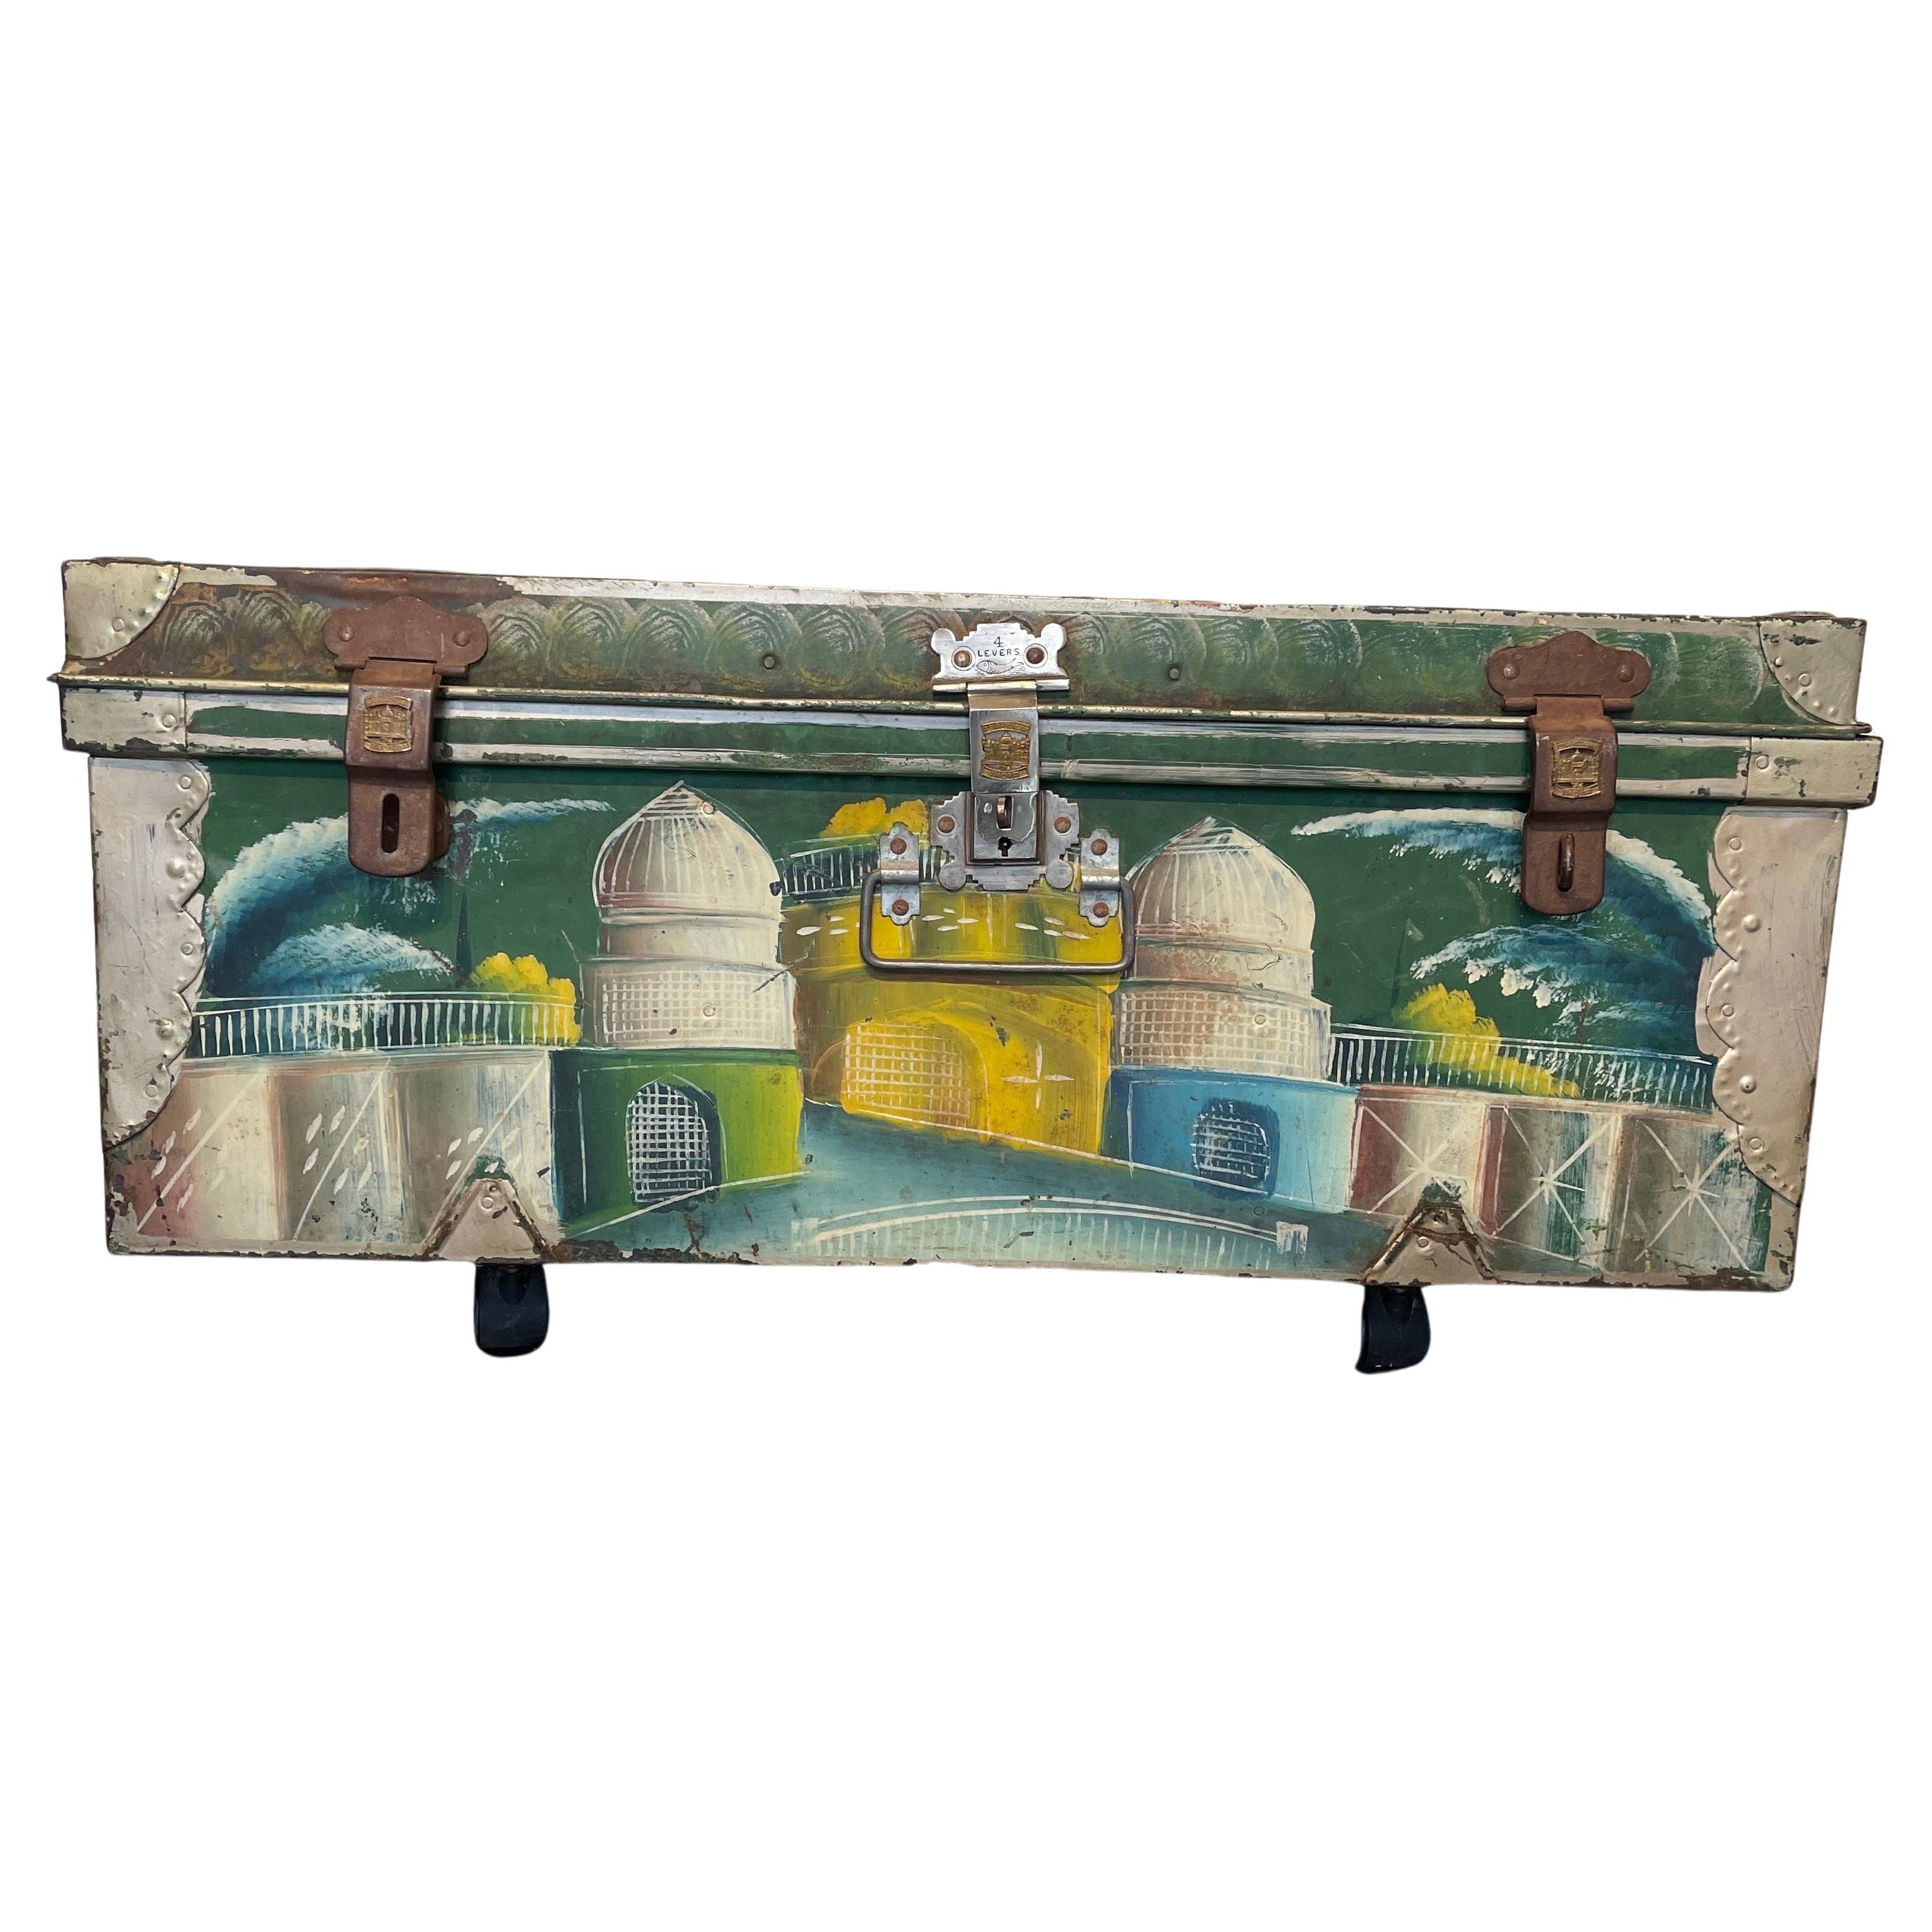 Vieux coffre de valise peint à la main avec des scènes élaborées de l'Inde, marque du fabricant Khwaja, Bombay, Inde. Ce coffre qui attire l'attention est une belle addition à tout décor dans votre maison. Les scènes de paysages colorés se détachent